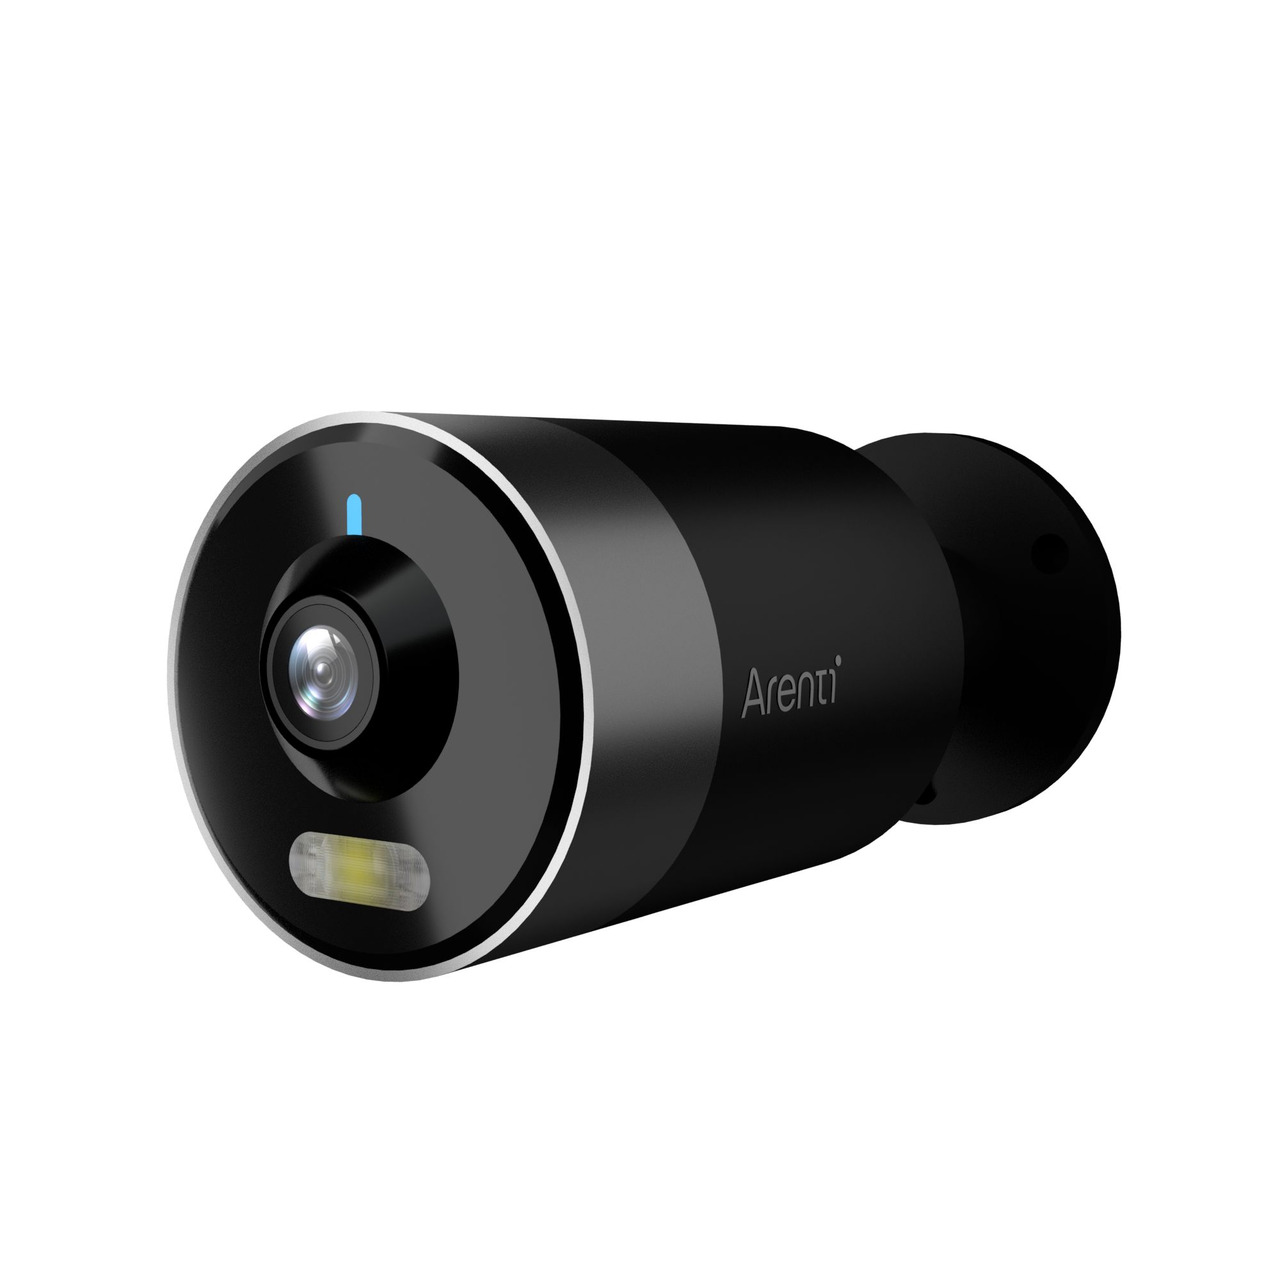 Arenti WLAN-Outdoor-Überwachungskamera OUTDOOR1- 2K-Auflösung- App-Zugriff- Amazon Alexa unter Sicherheitstechnik